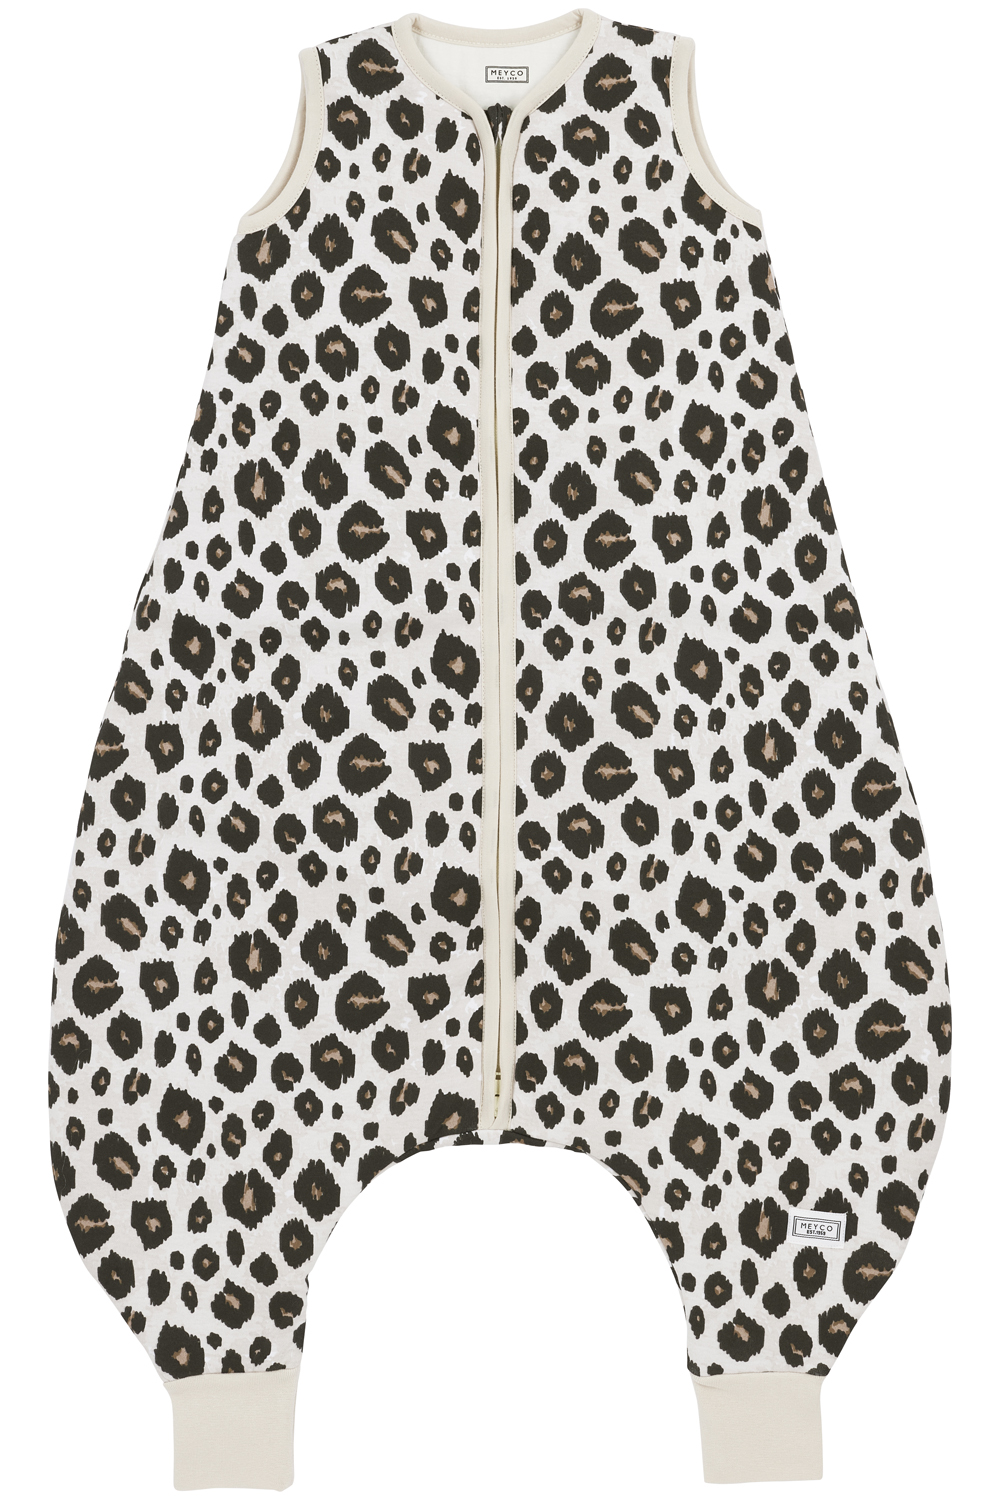 Baby Sleeping bag Jumper Leopard - Sand Melange - 92cm